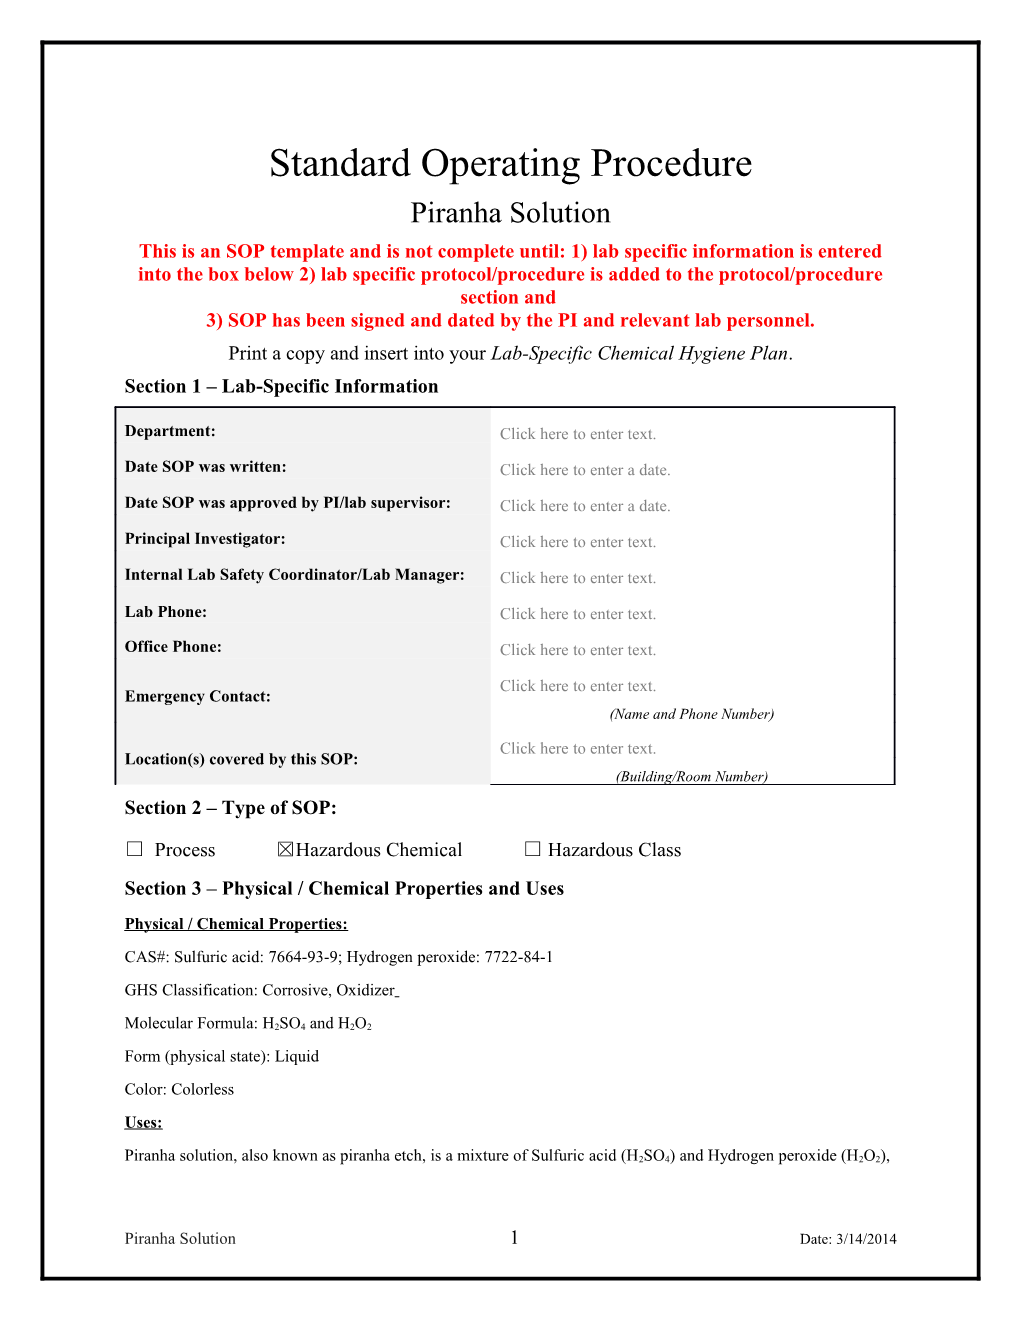 Standard Operating Procedure s8